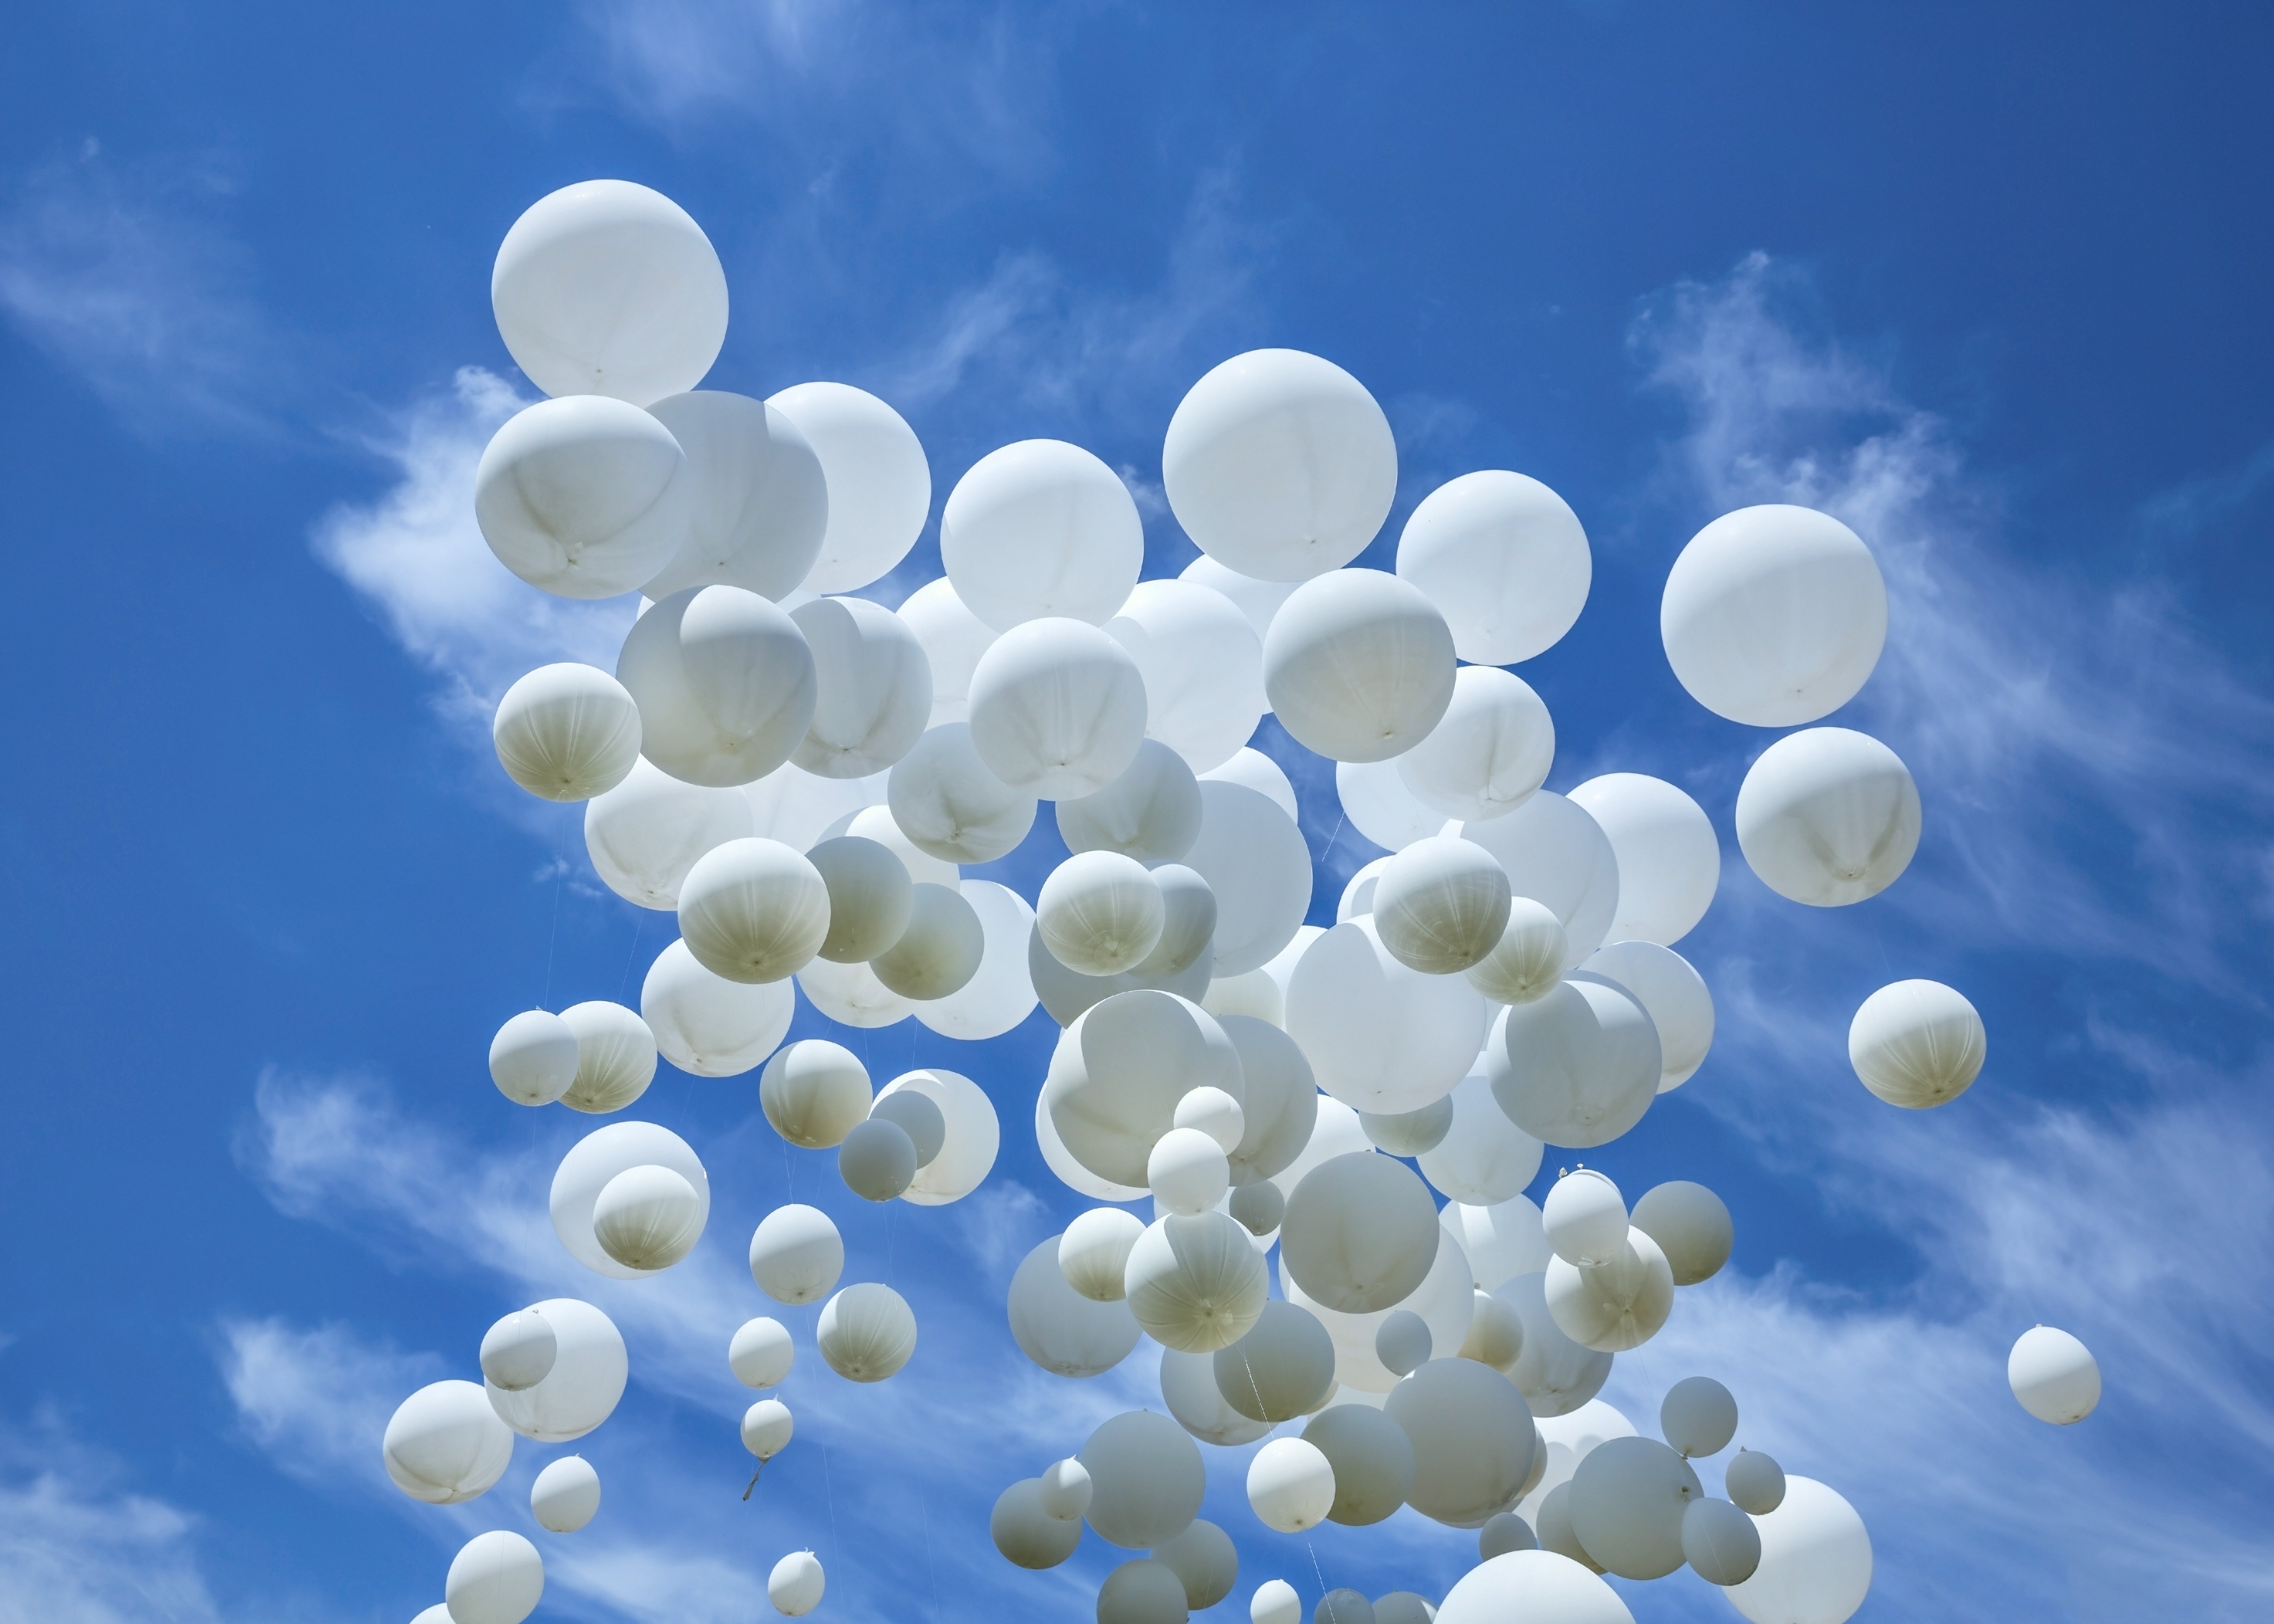 Шары улетели в небо. Шары в небе. Воздушный шарик. Воздушные шары в небе. Белые шары в небе.